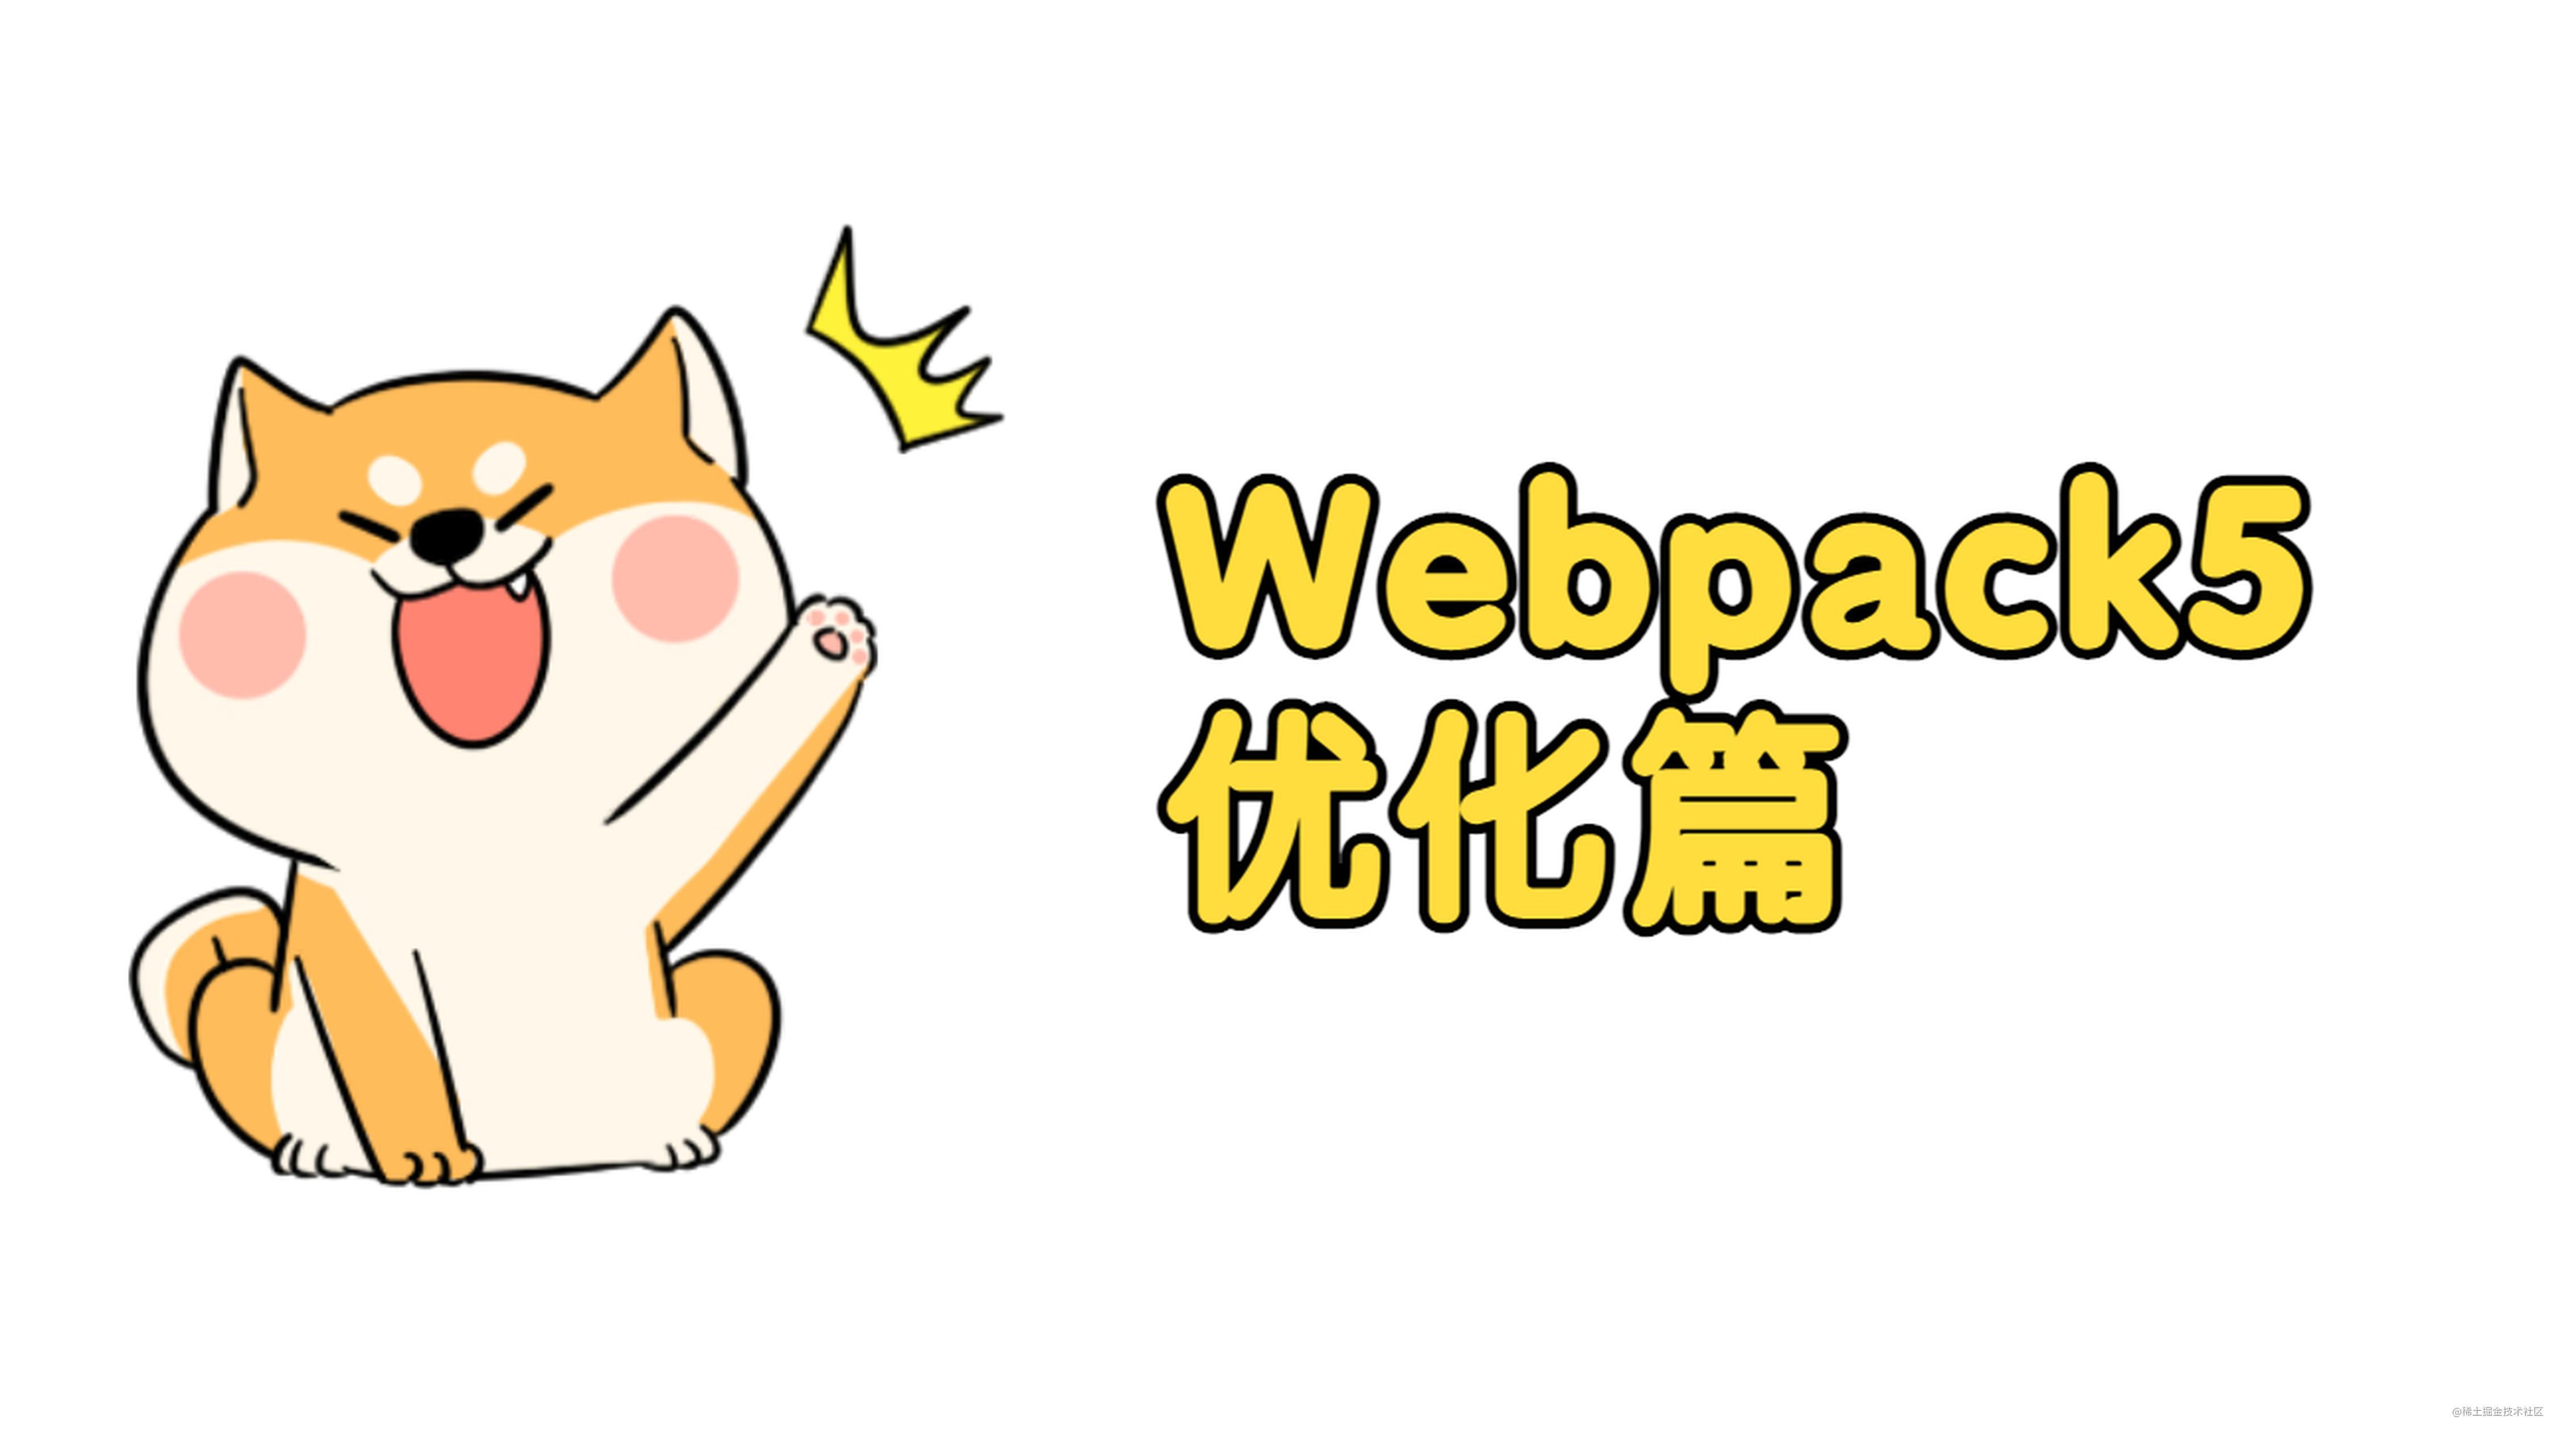 学习 Webpack5 之路（优化篇）- 近 7k 字